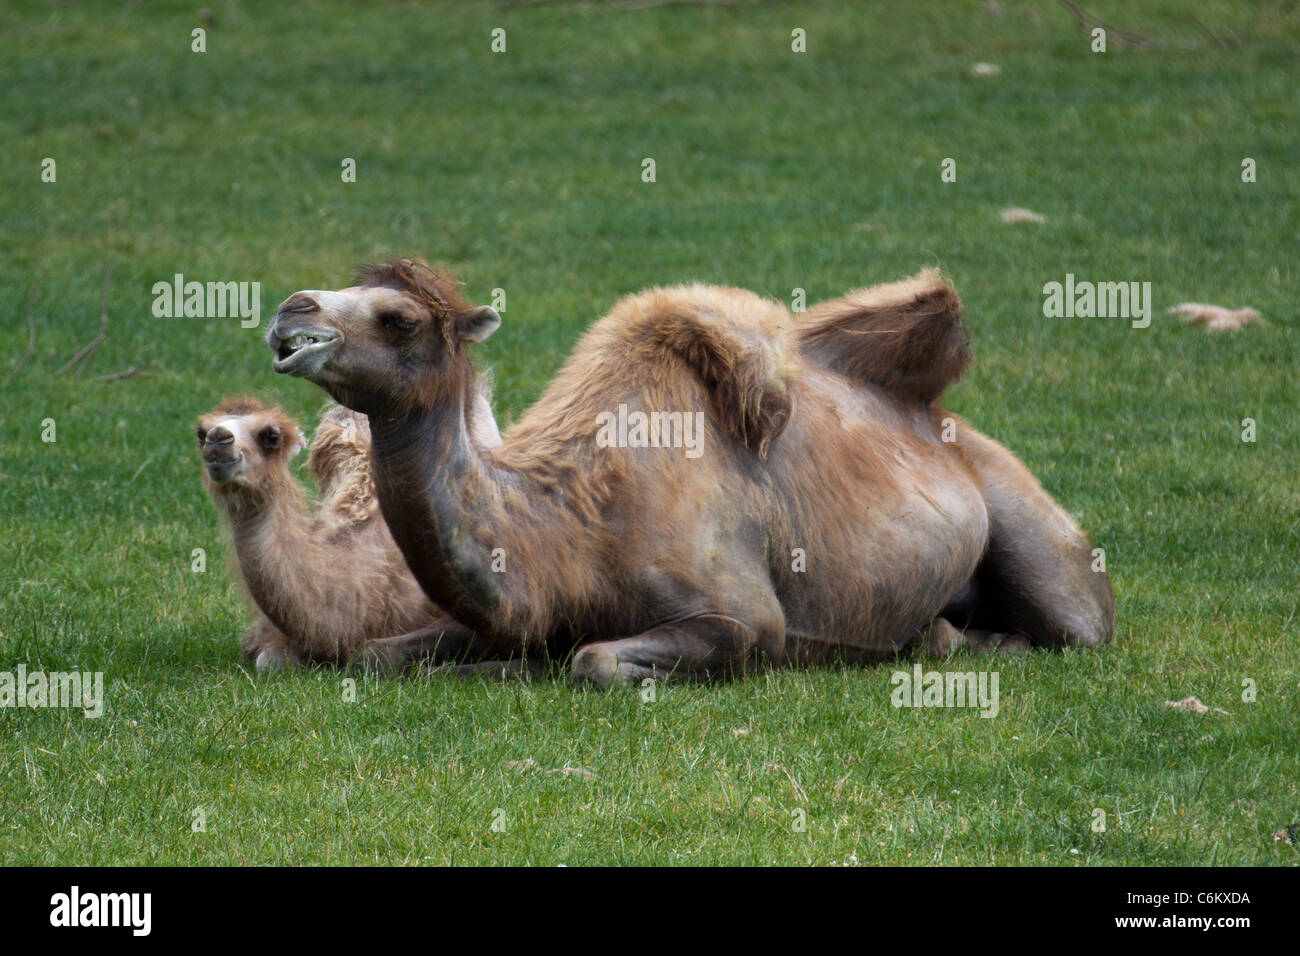 Addomesticazione Bactrian cammelli (Camelus bactrianus) in appoggio sull'erba Foto Stock